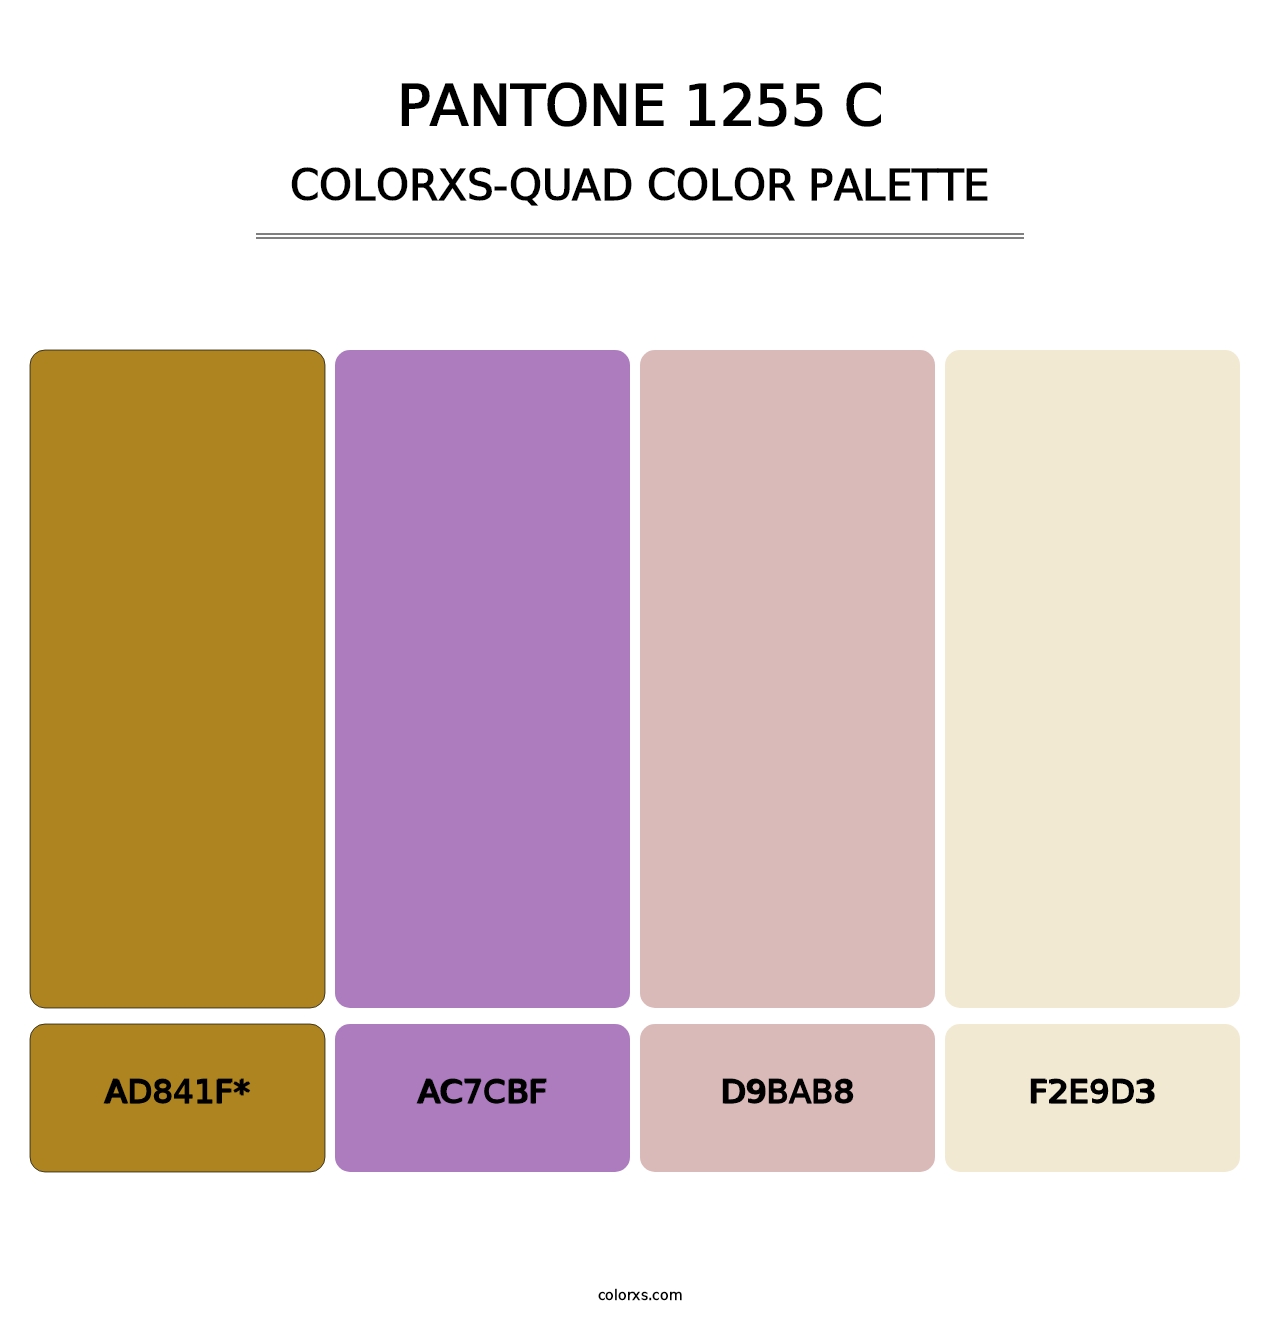 PANTONE 1255 C - Colorxs Quad Palette